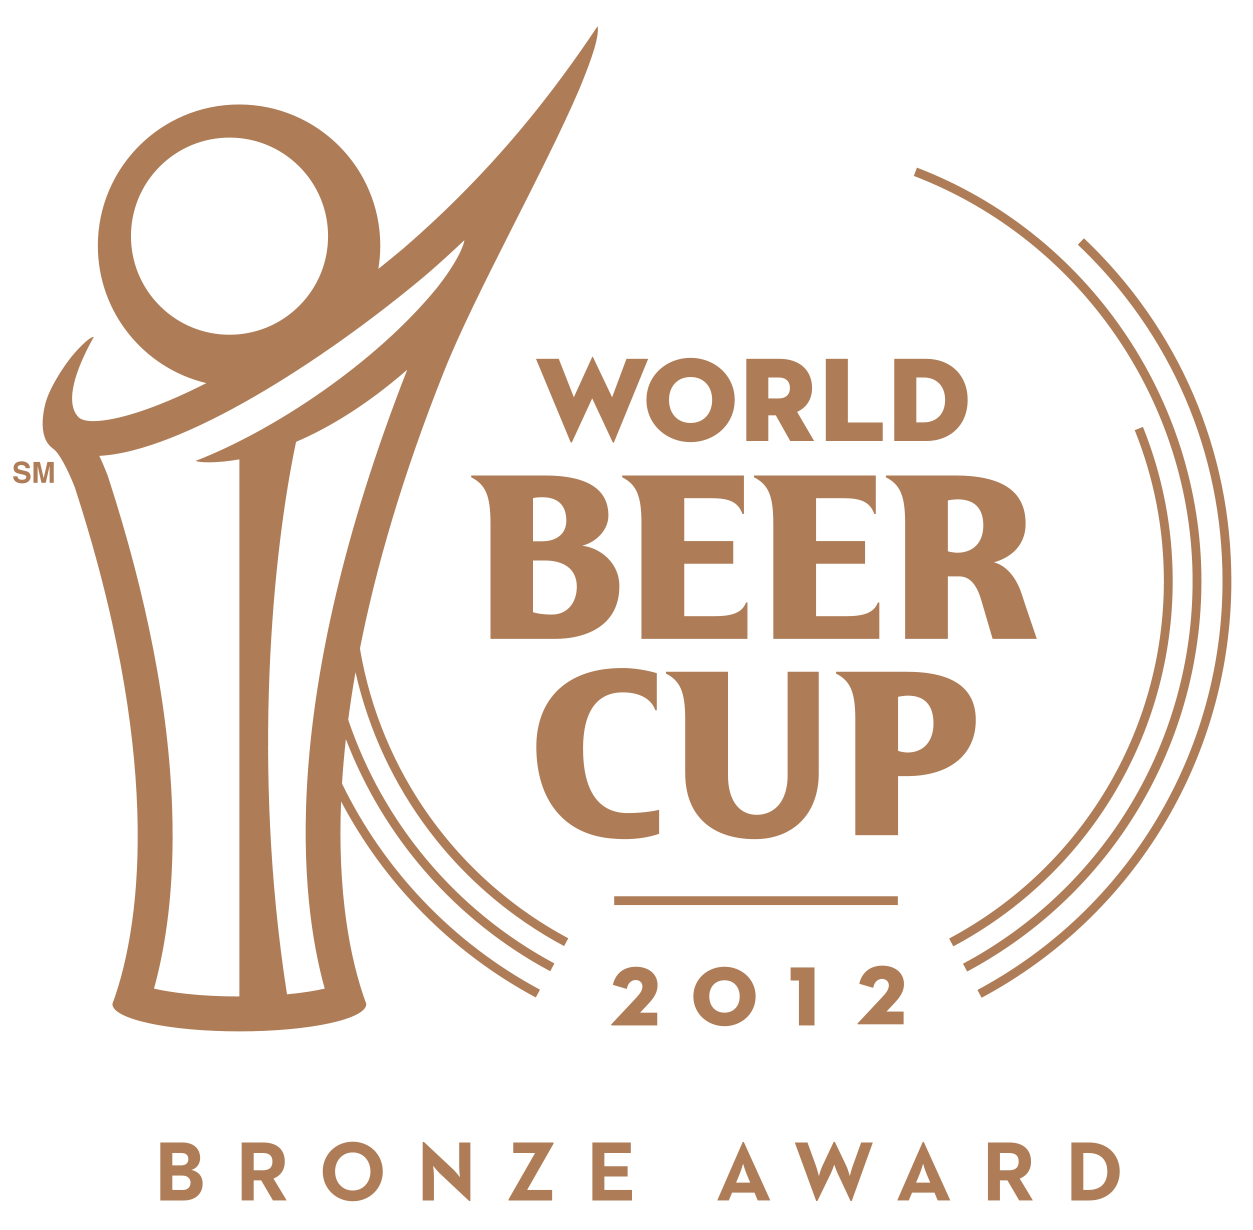  2012 World Beer Cup bronze